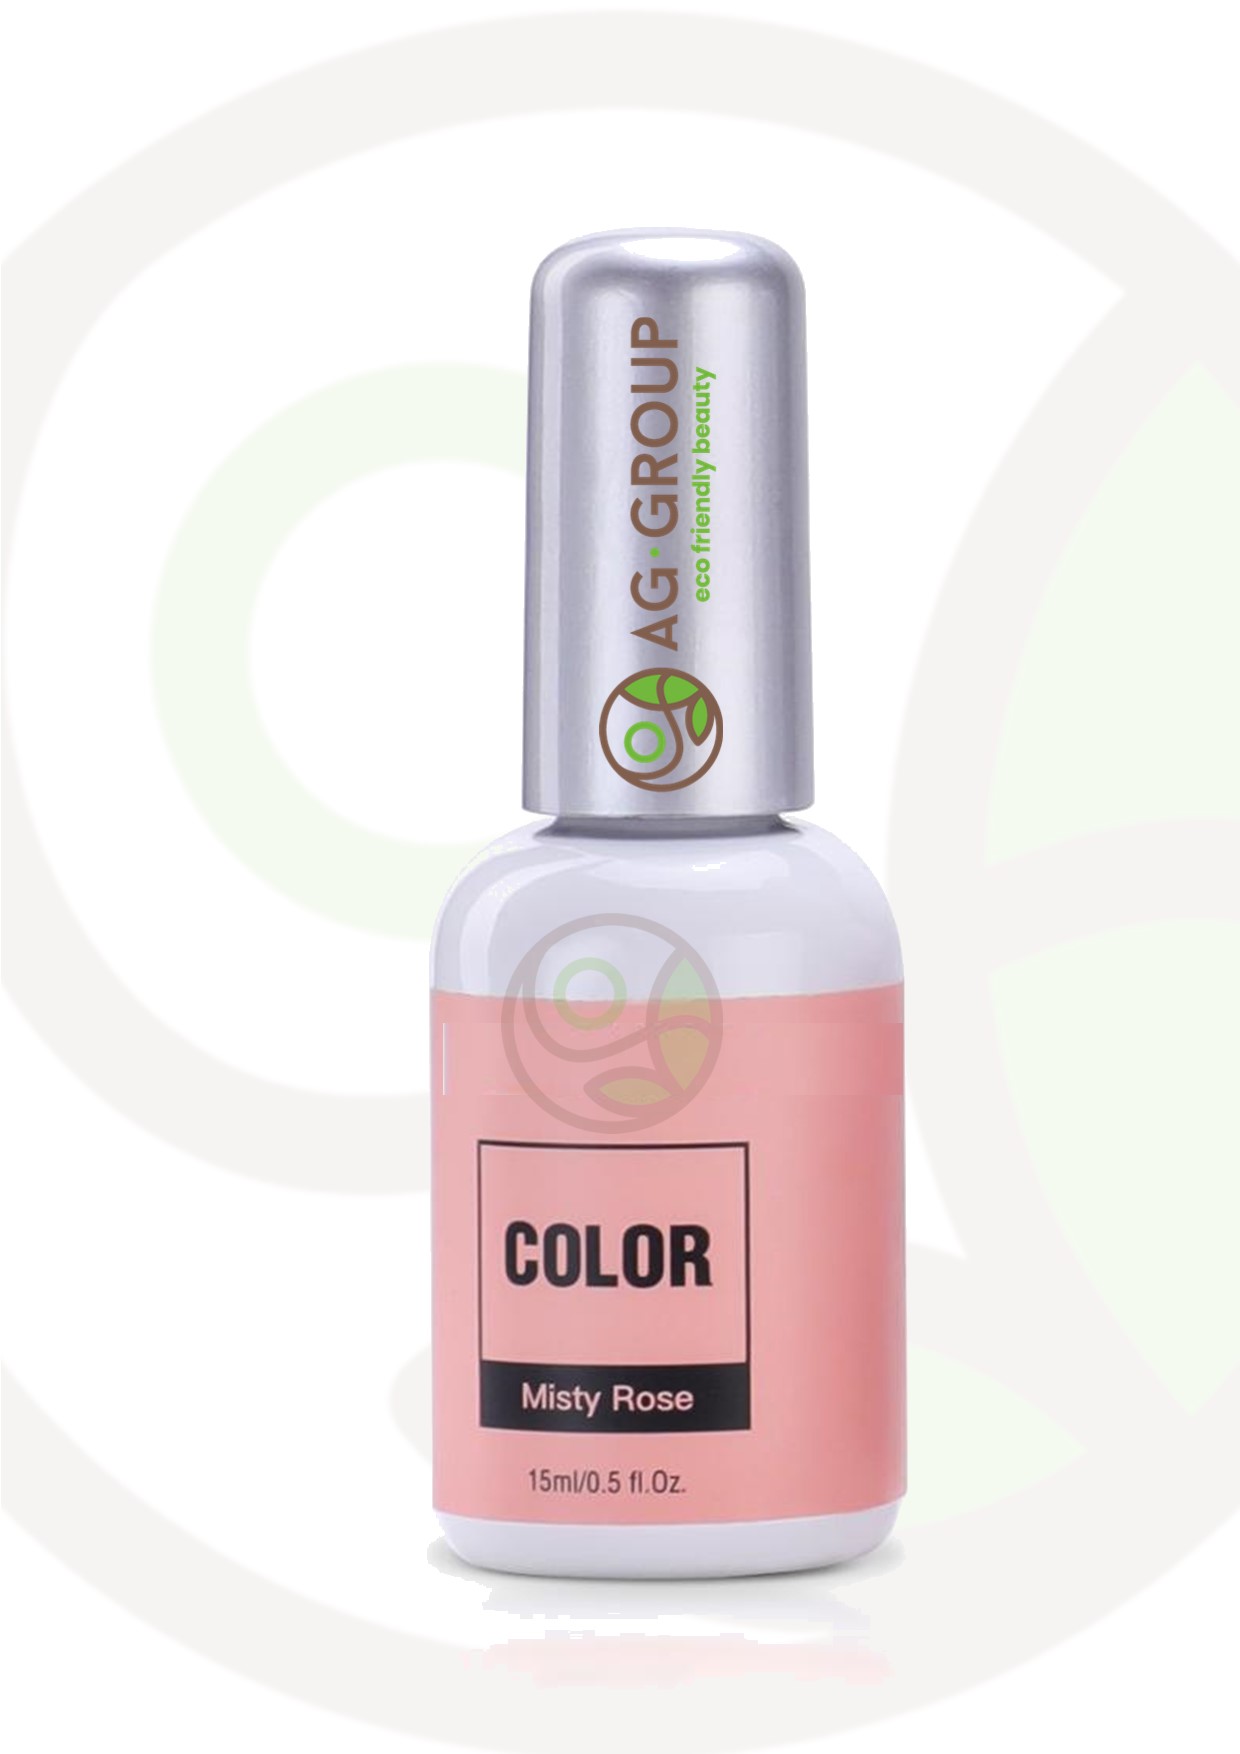 Featured image for “Gel polish soak -off led/uv- color misty rose”